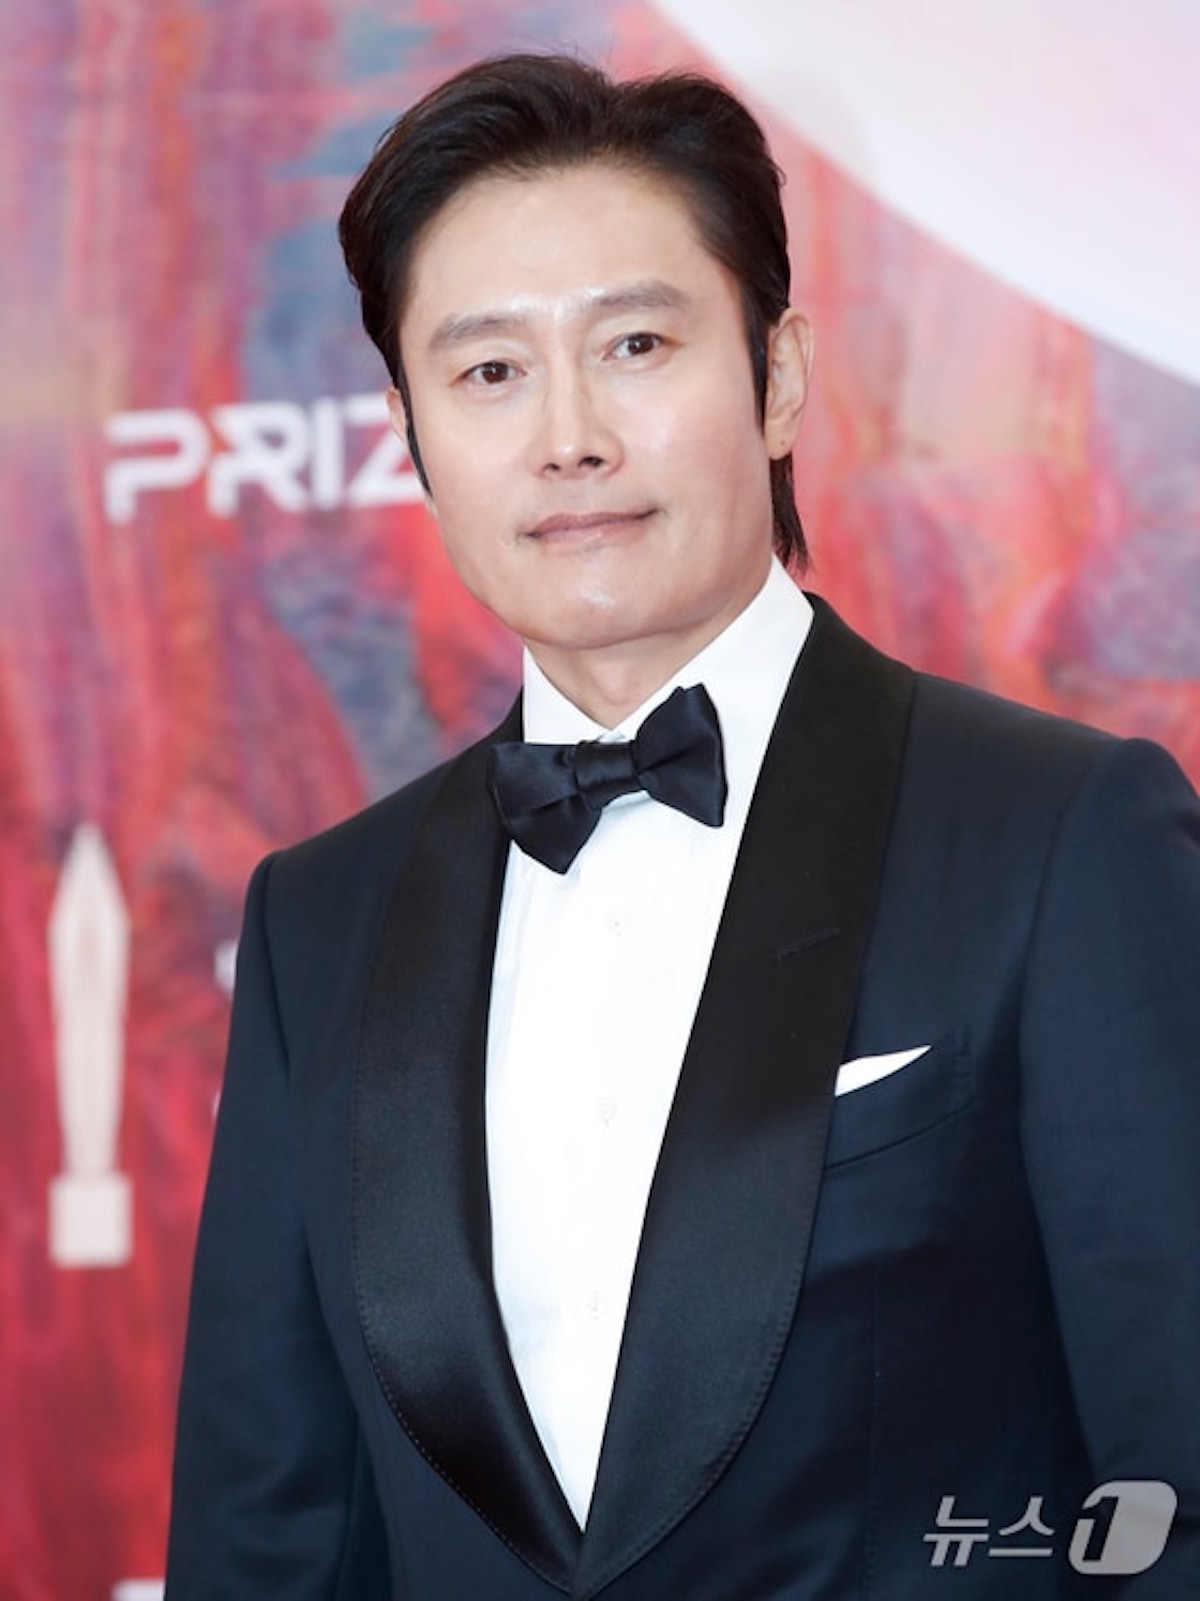 Tương tự, Lee Byung Hun cũng là ngôi sao luôn được chào đón tại lễ trao giải phim ảnh danh giá Hàn Quốc này